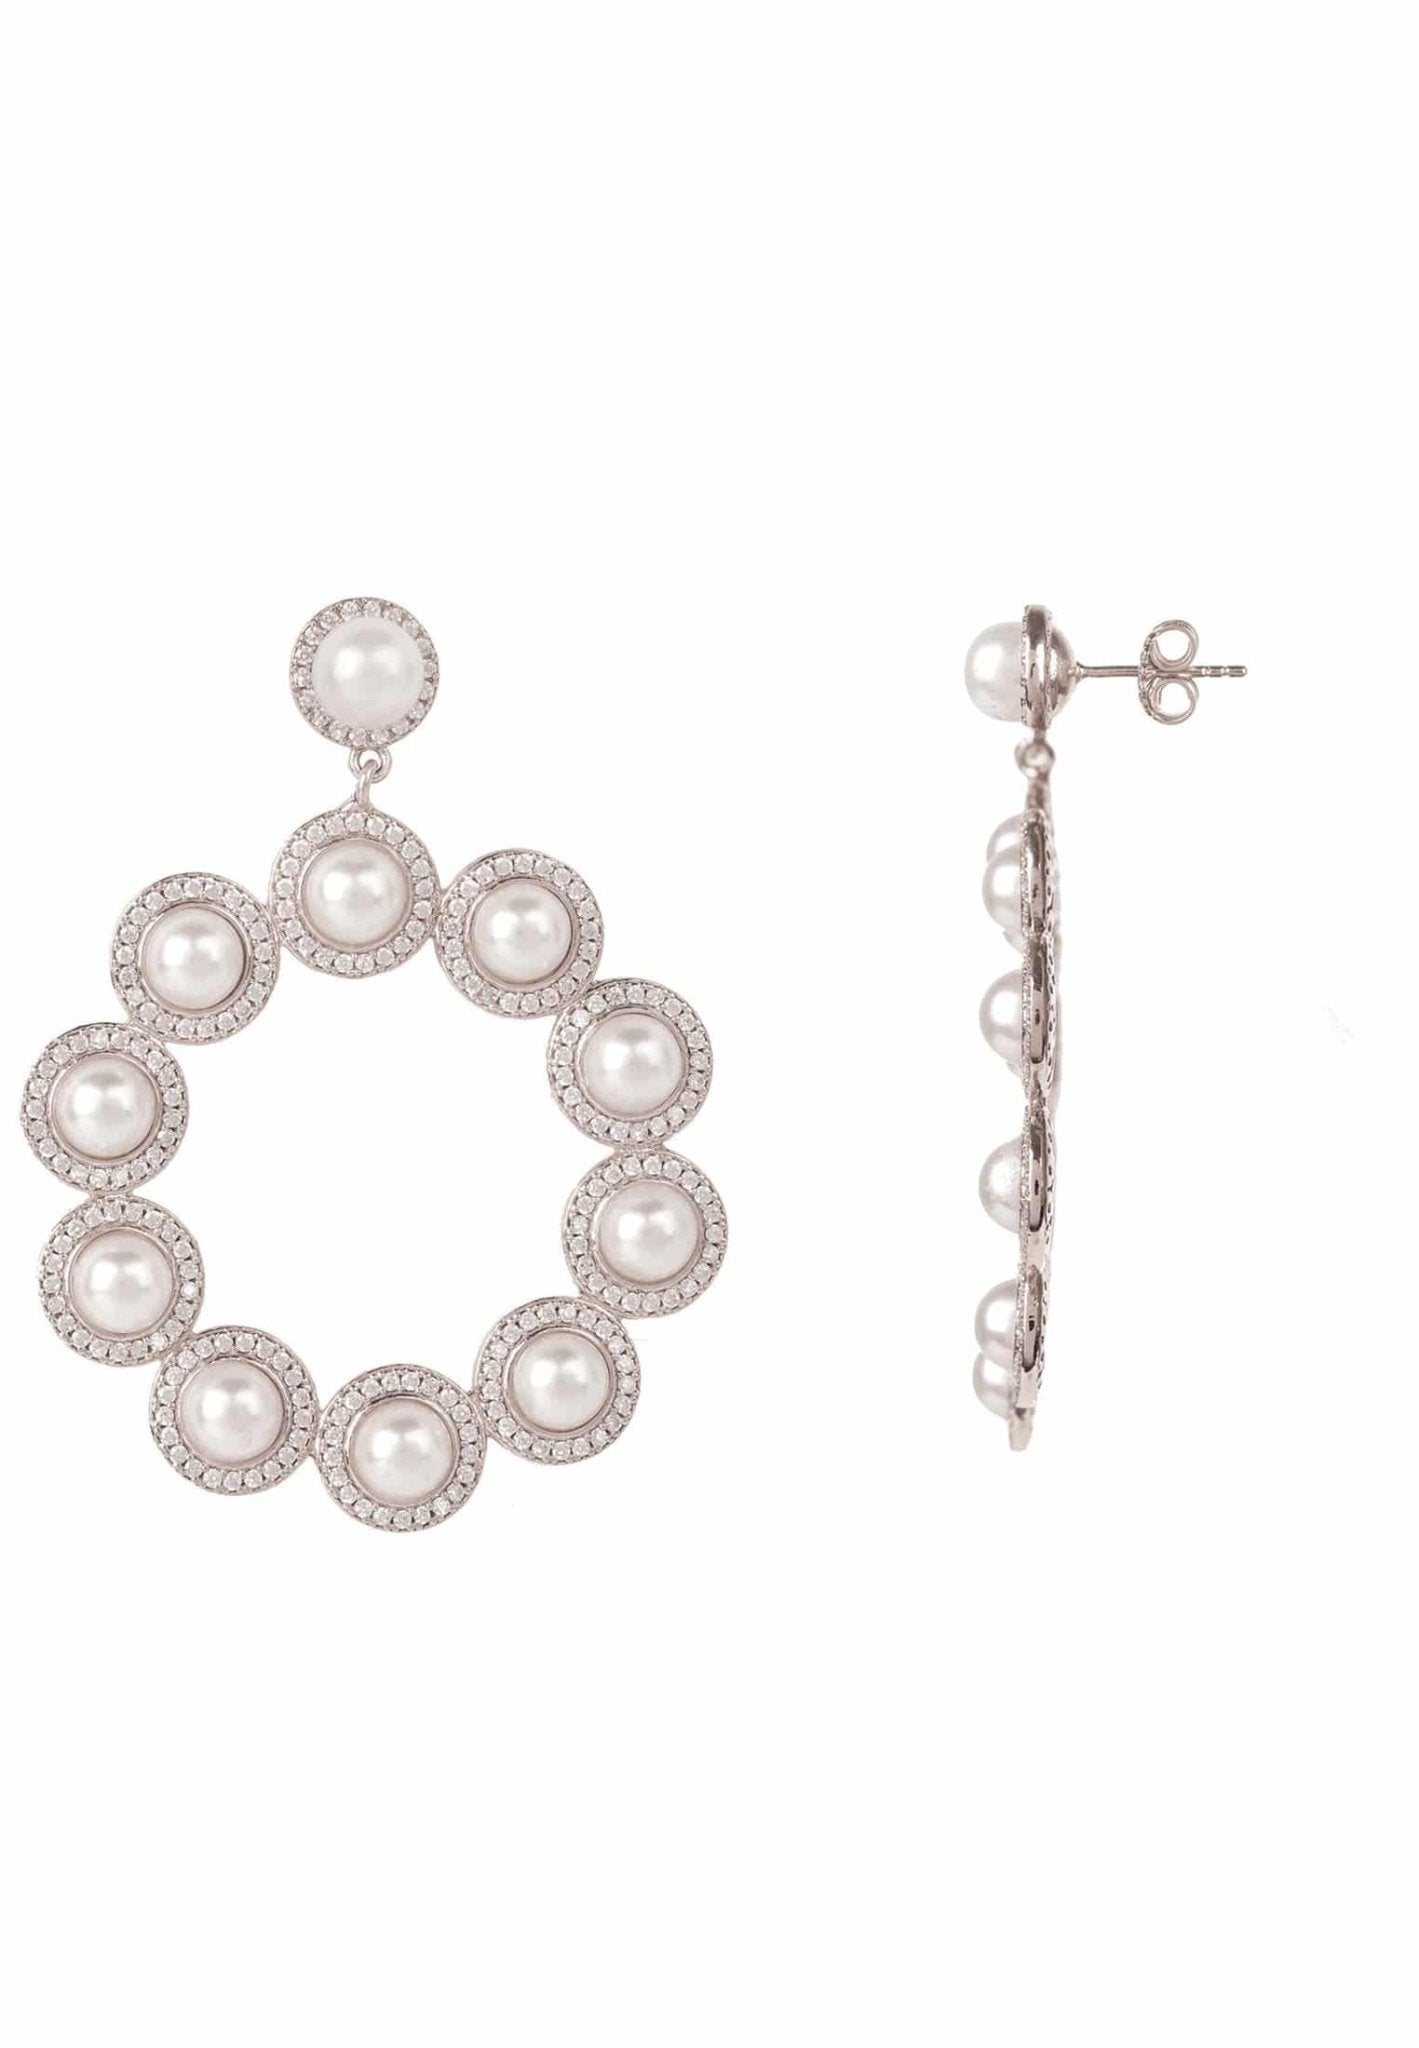 Gatsby Pearl Gemstone Statement Earrings Silver - LATELITA Earrings